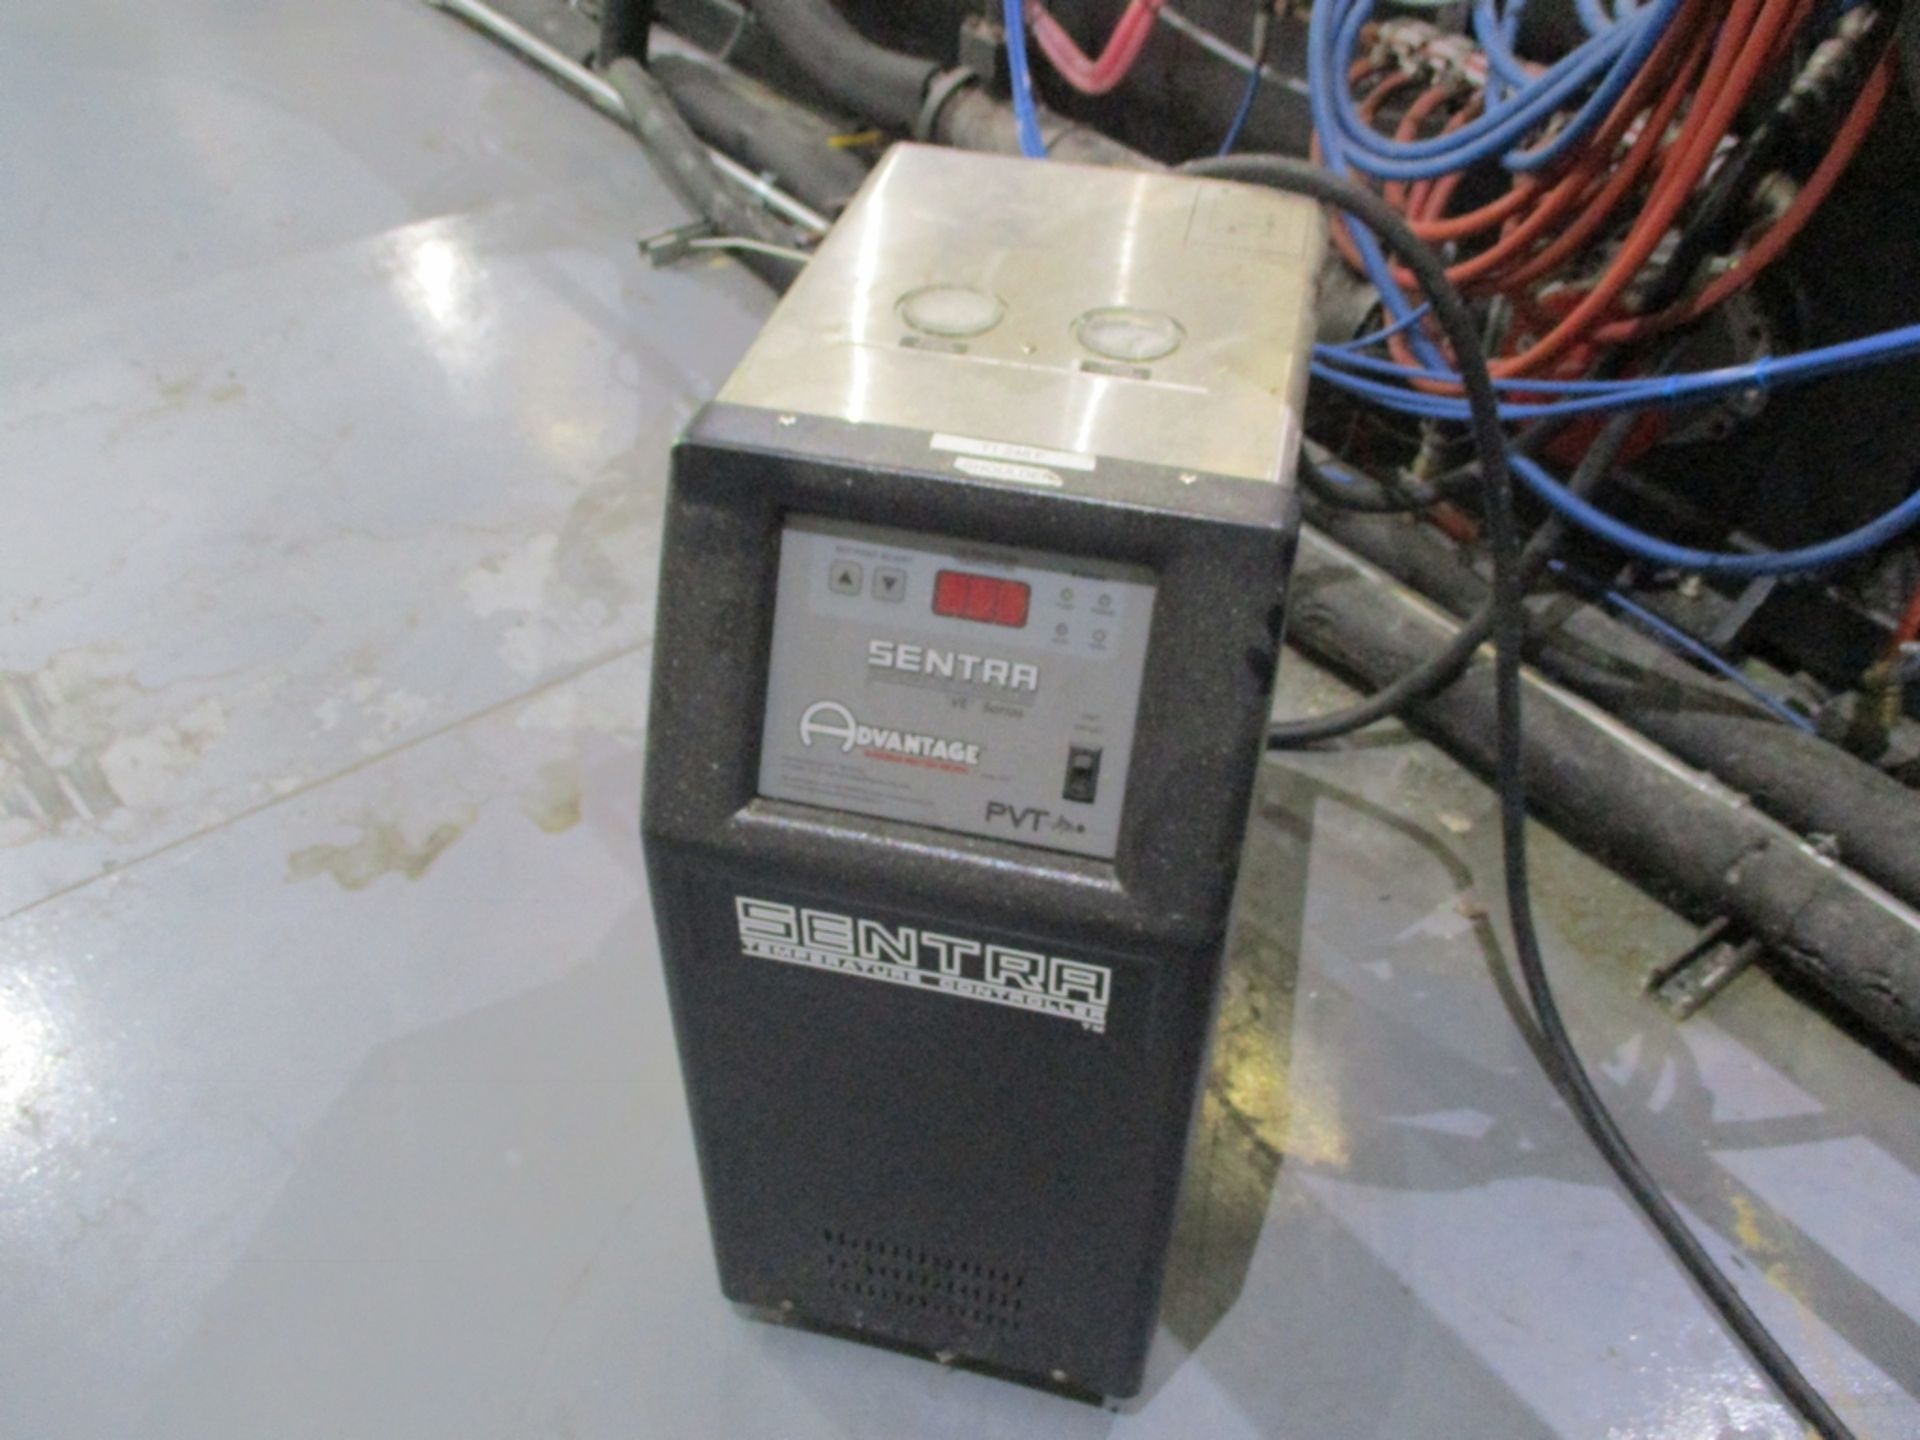 2015 Sentra Advantage PVT Temperature Control Unit - Model: SK-1035VEP-21C1; 230V - Image 2 of 5